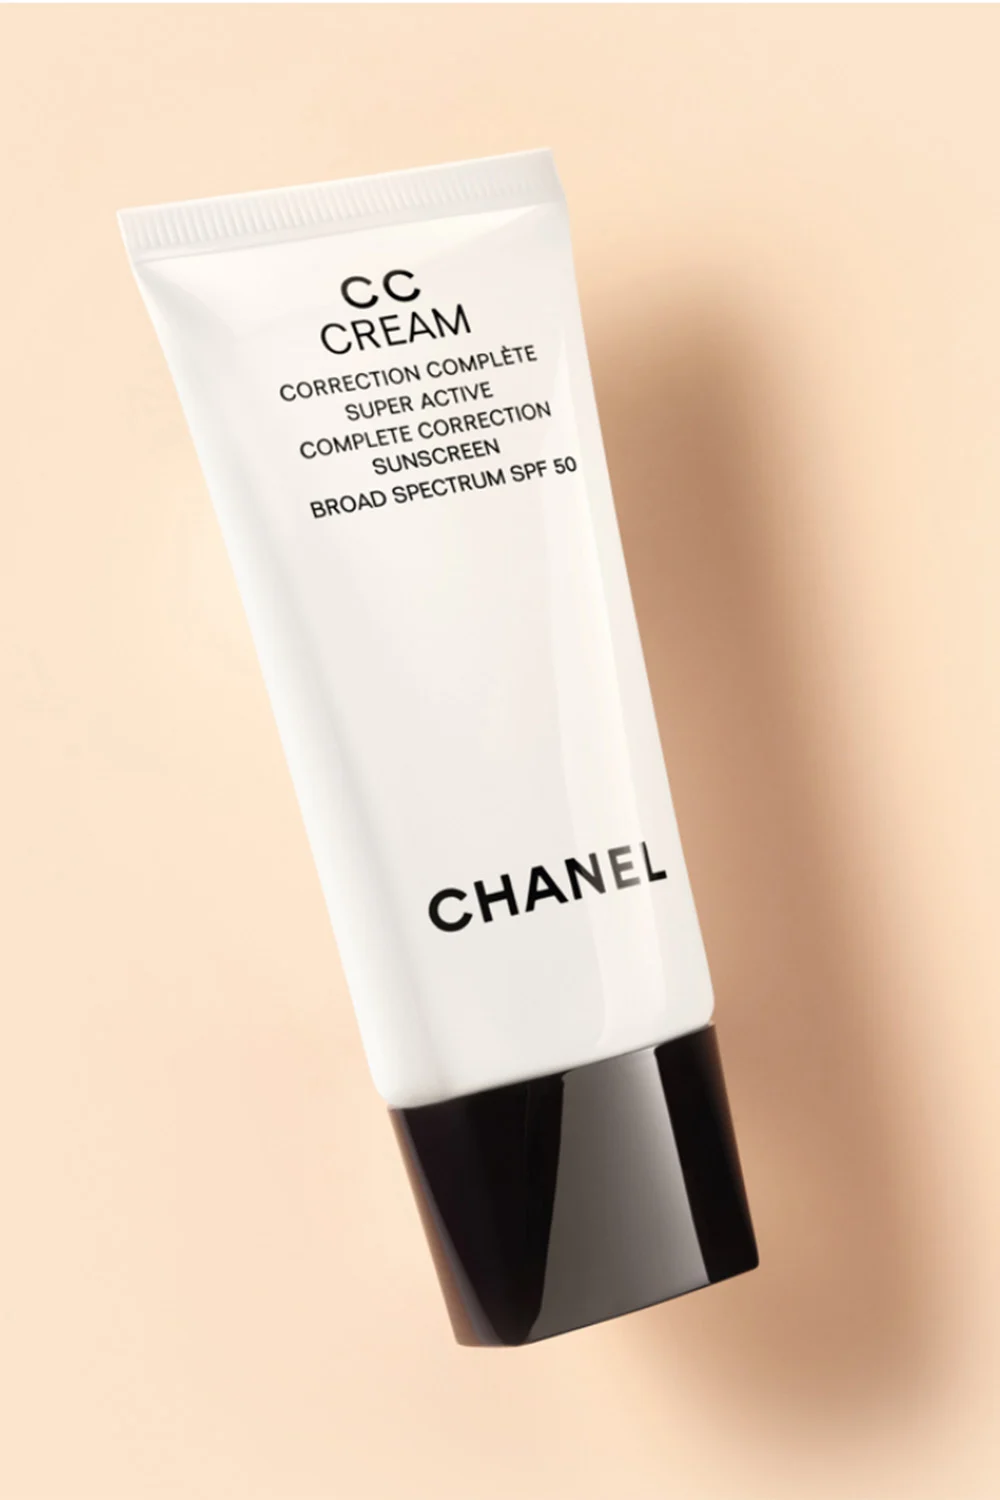 Chanel CC cream on beige background. 